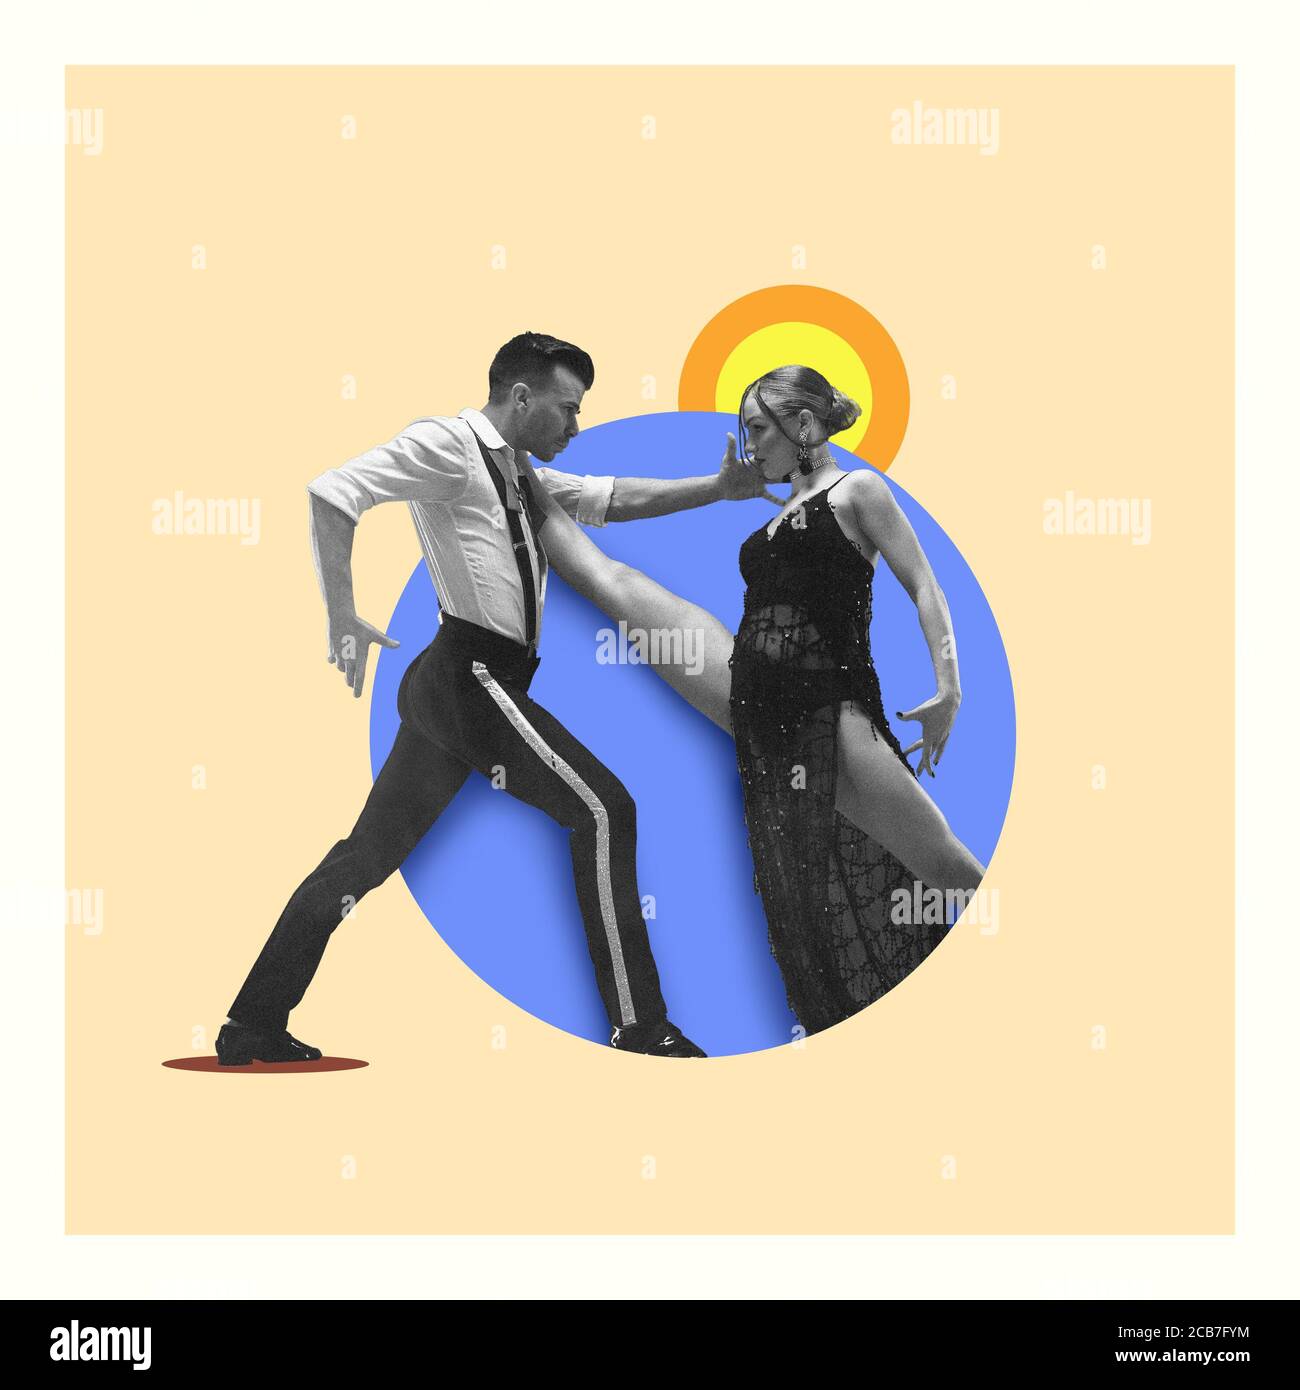 Couple passionné dansant le tango sur fond jaune-bleu. Espace négatif pour insérer votre texte. Design moderne. Collage d'art contemporain coloré et conceptuel brillant pour la publicité. Zine, style four à micro-ondes. Banque D'Images